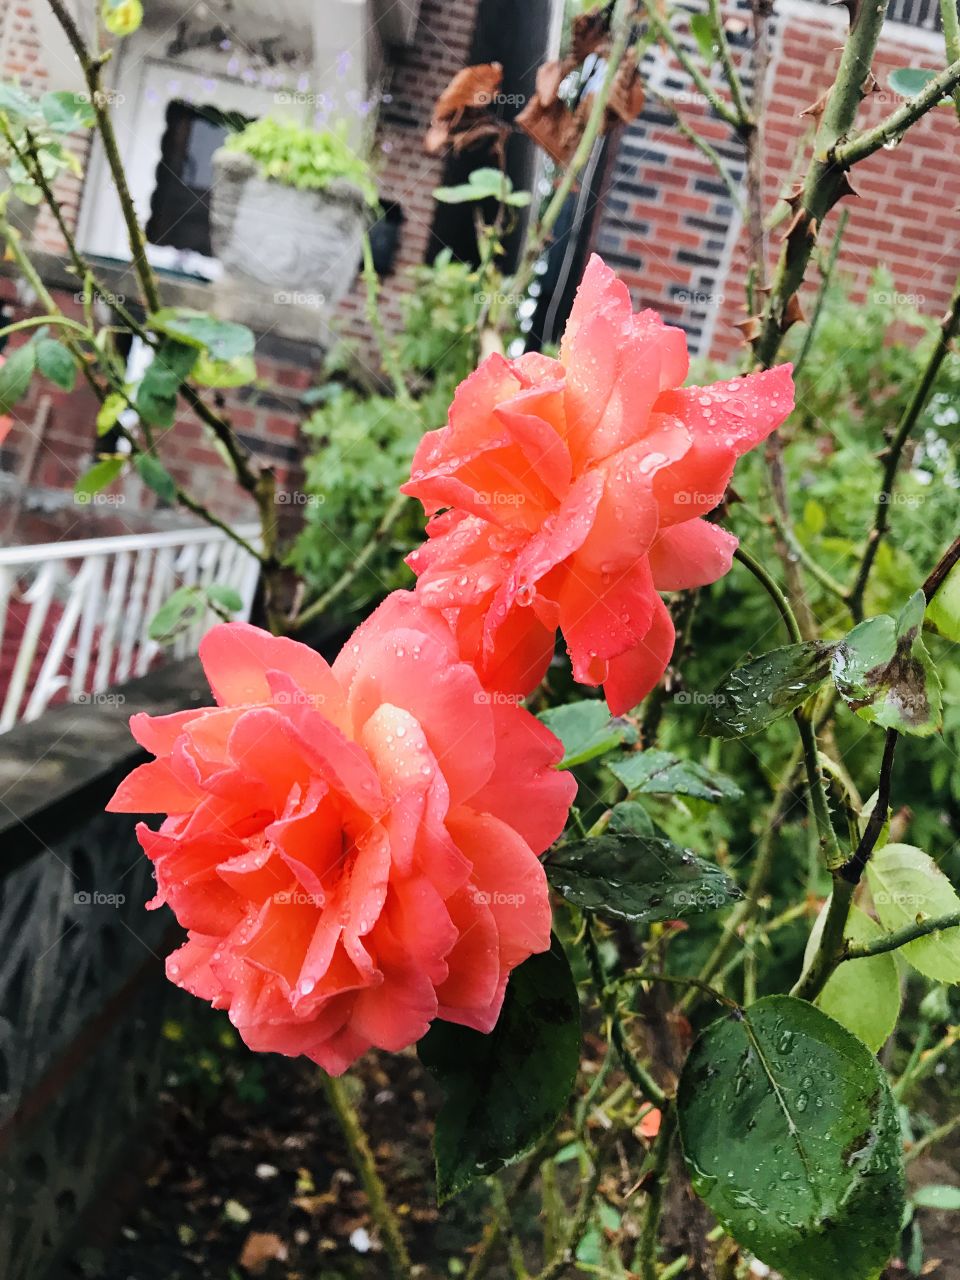 Roses under the rain 